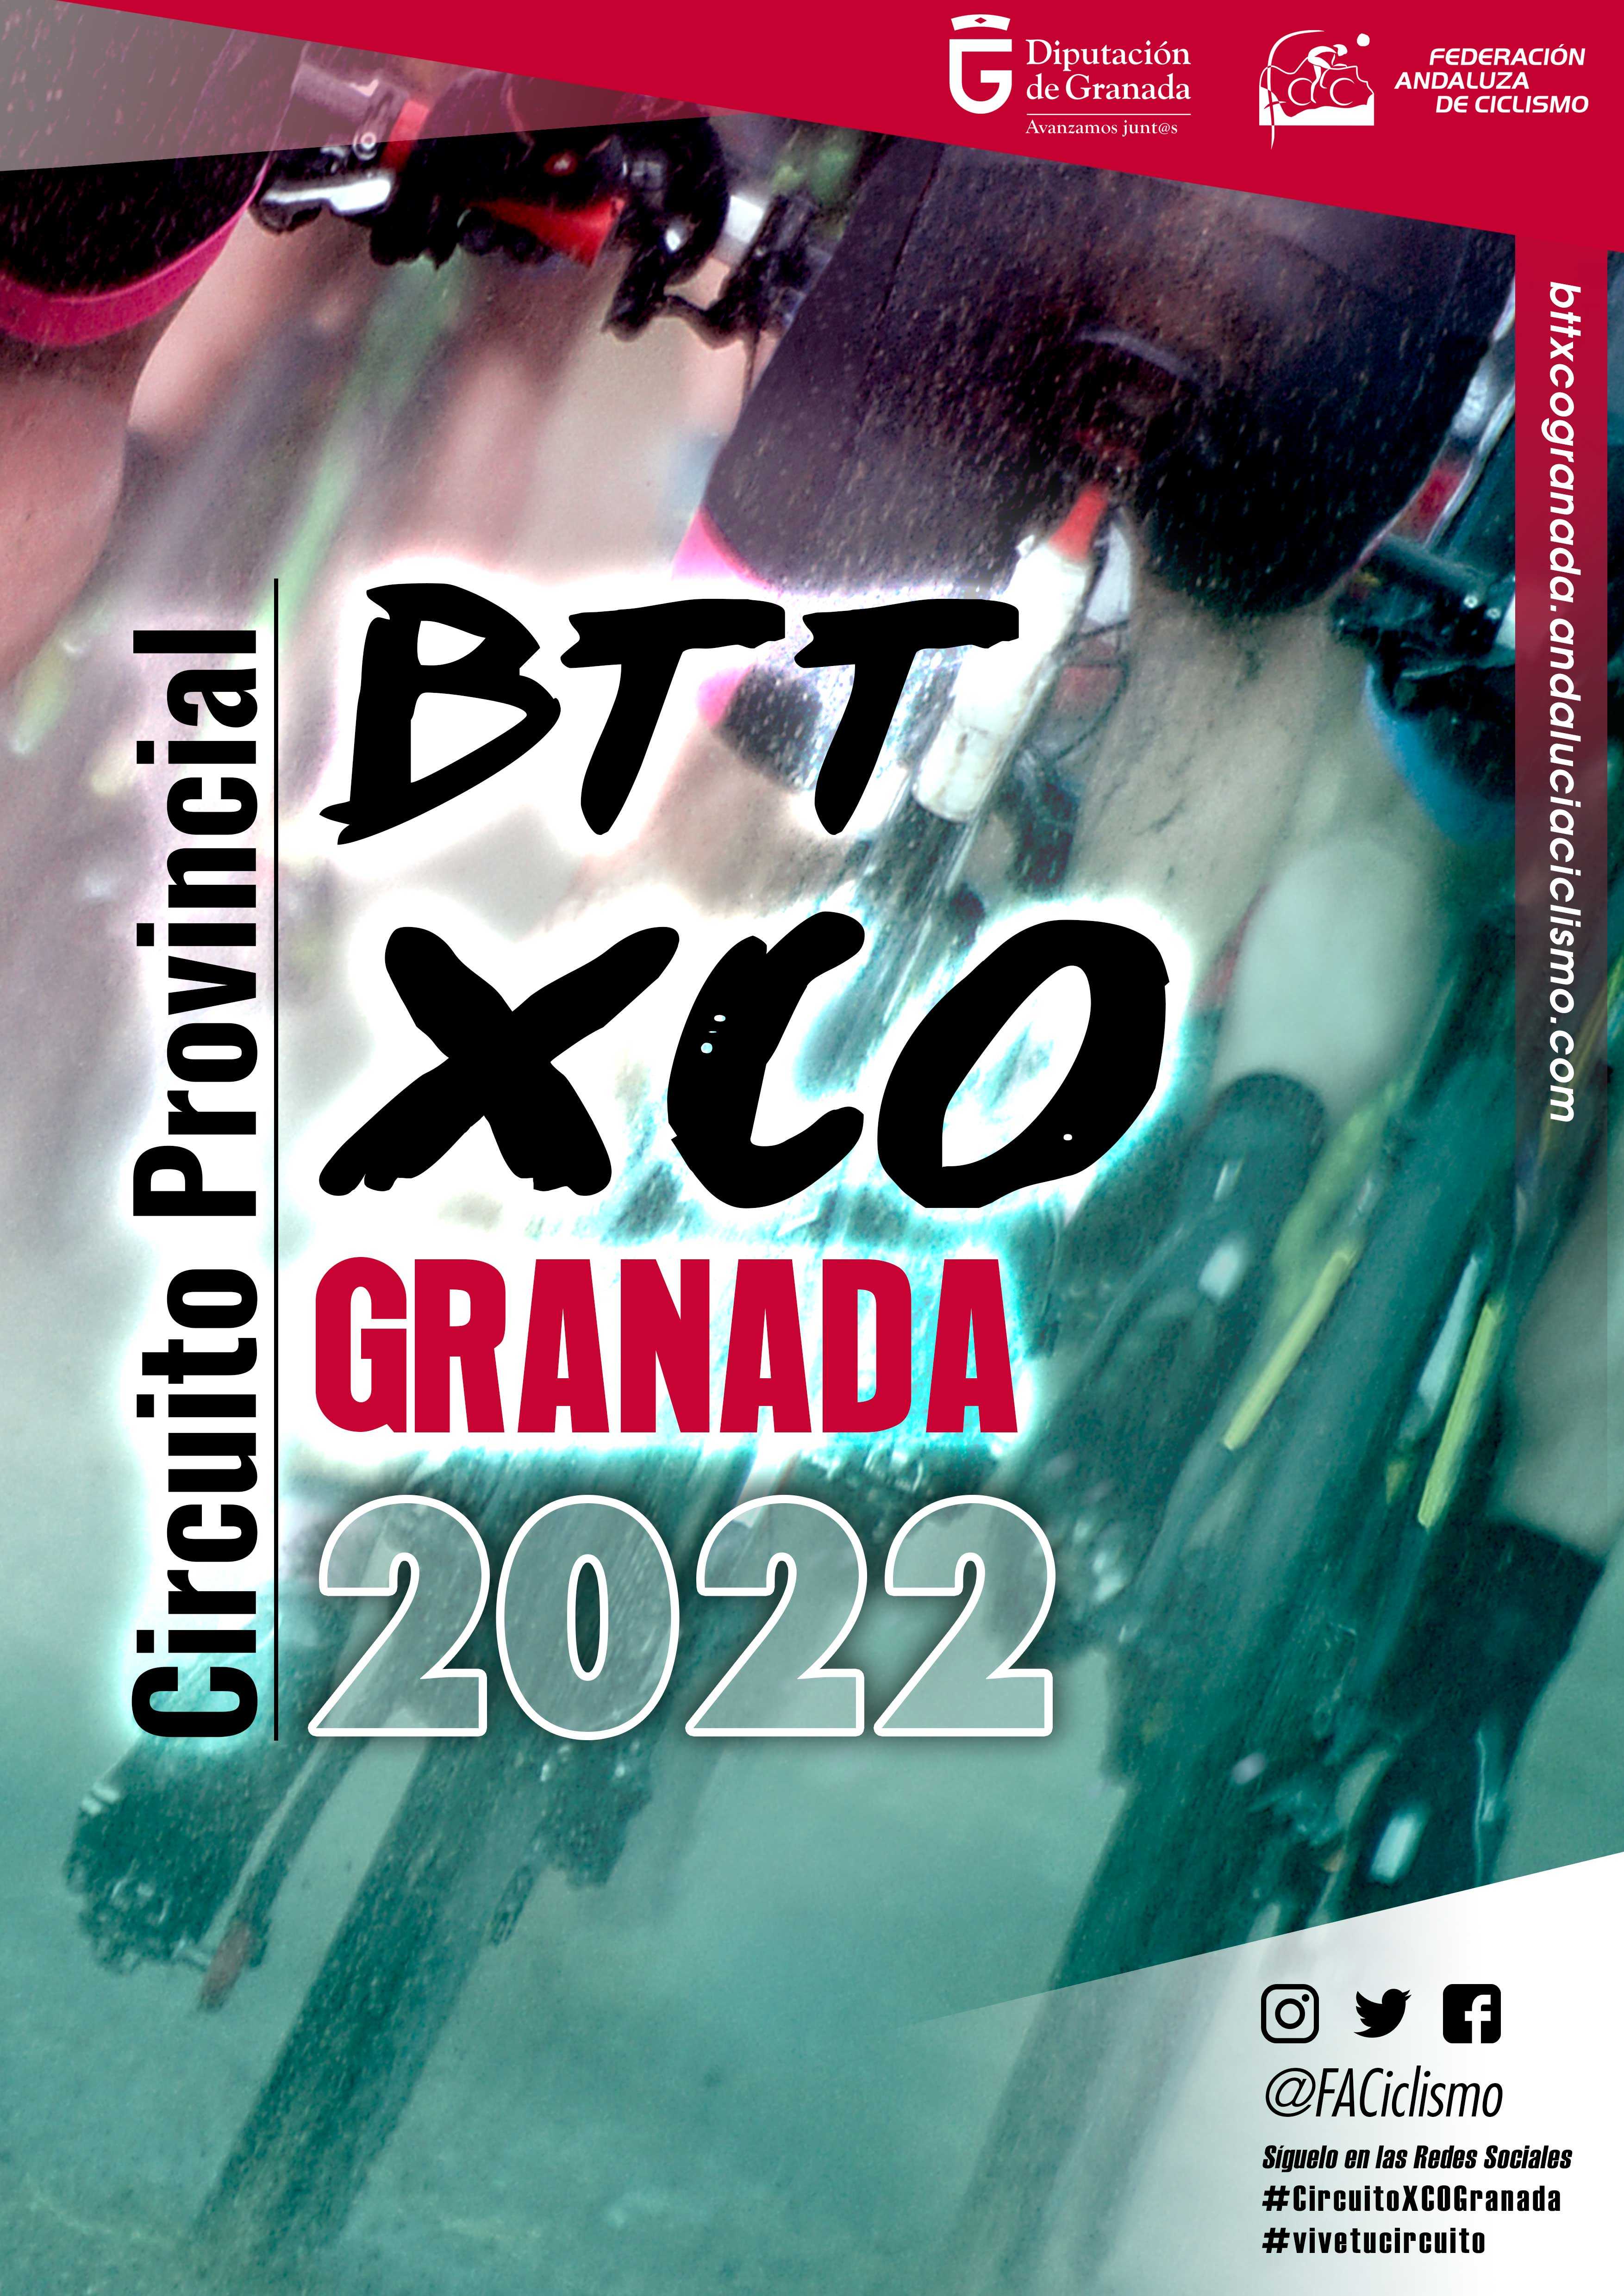 El Gran Premio David Valero cerrará el Circuito Granada XCO 2022